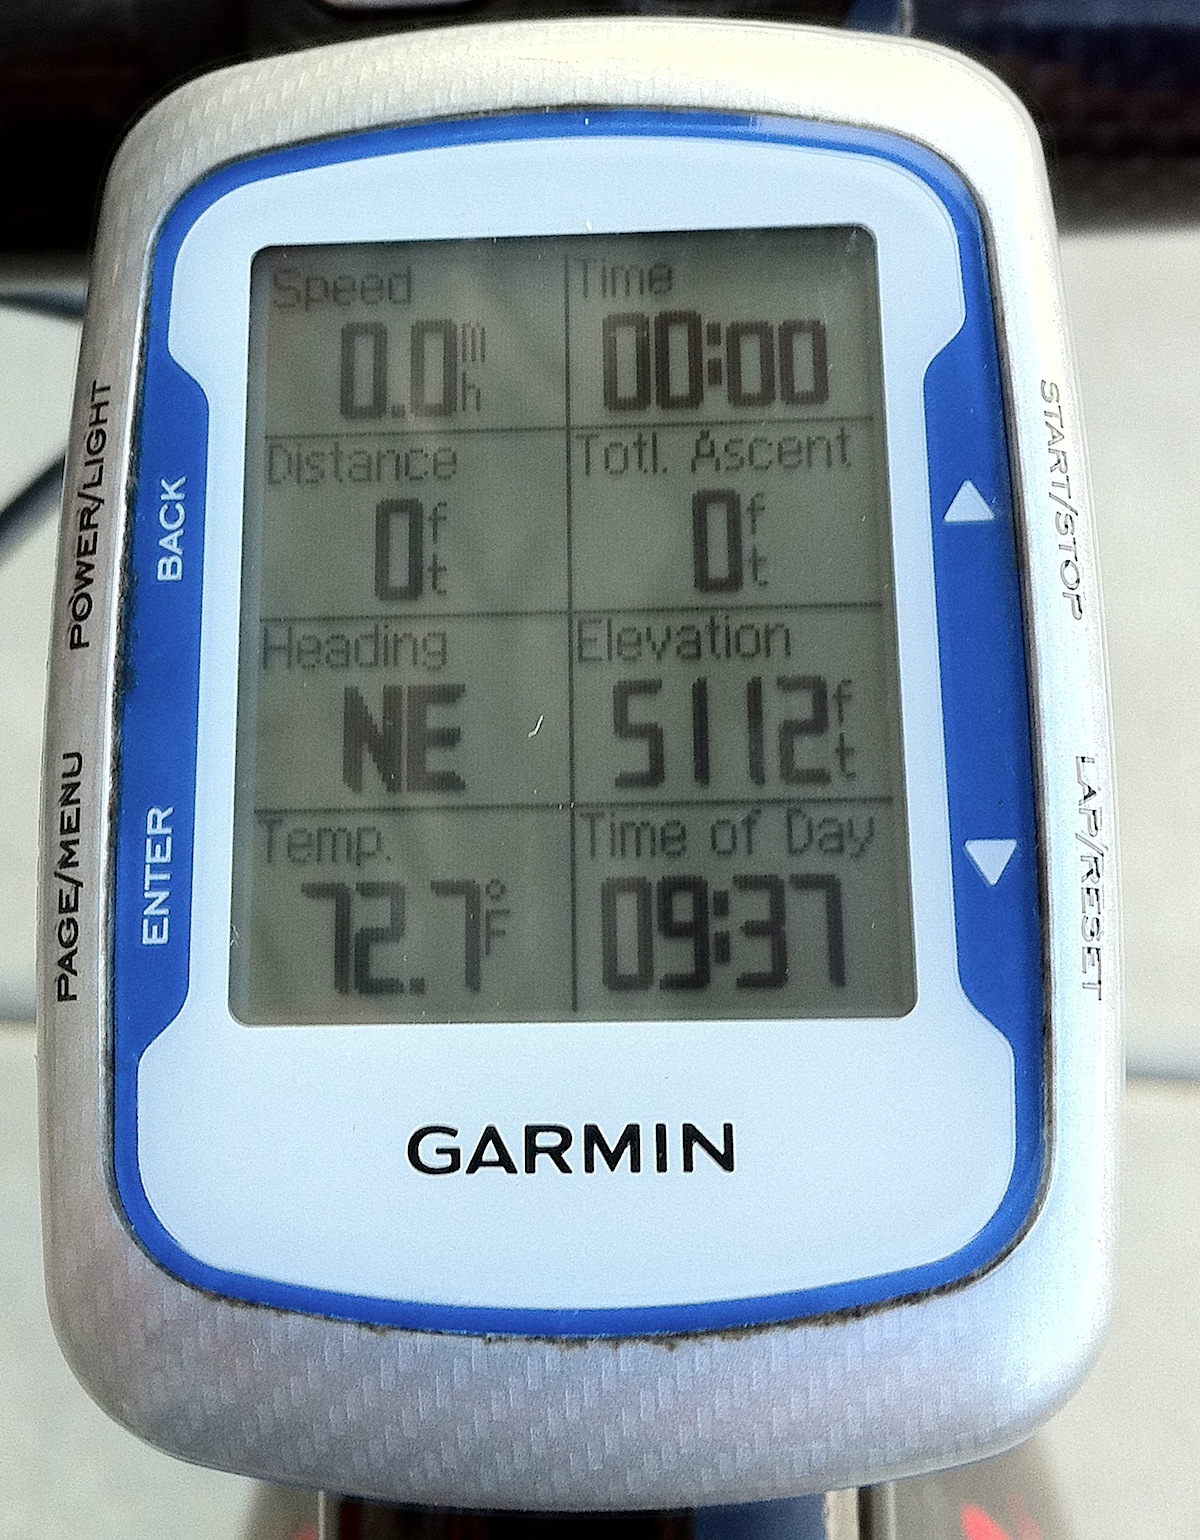 garmin edge 500 heart rate monitor